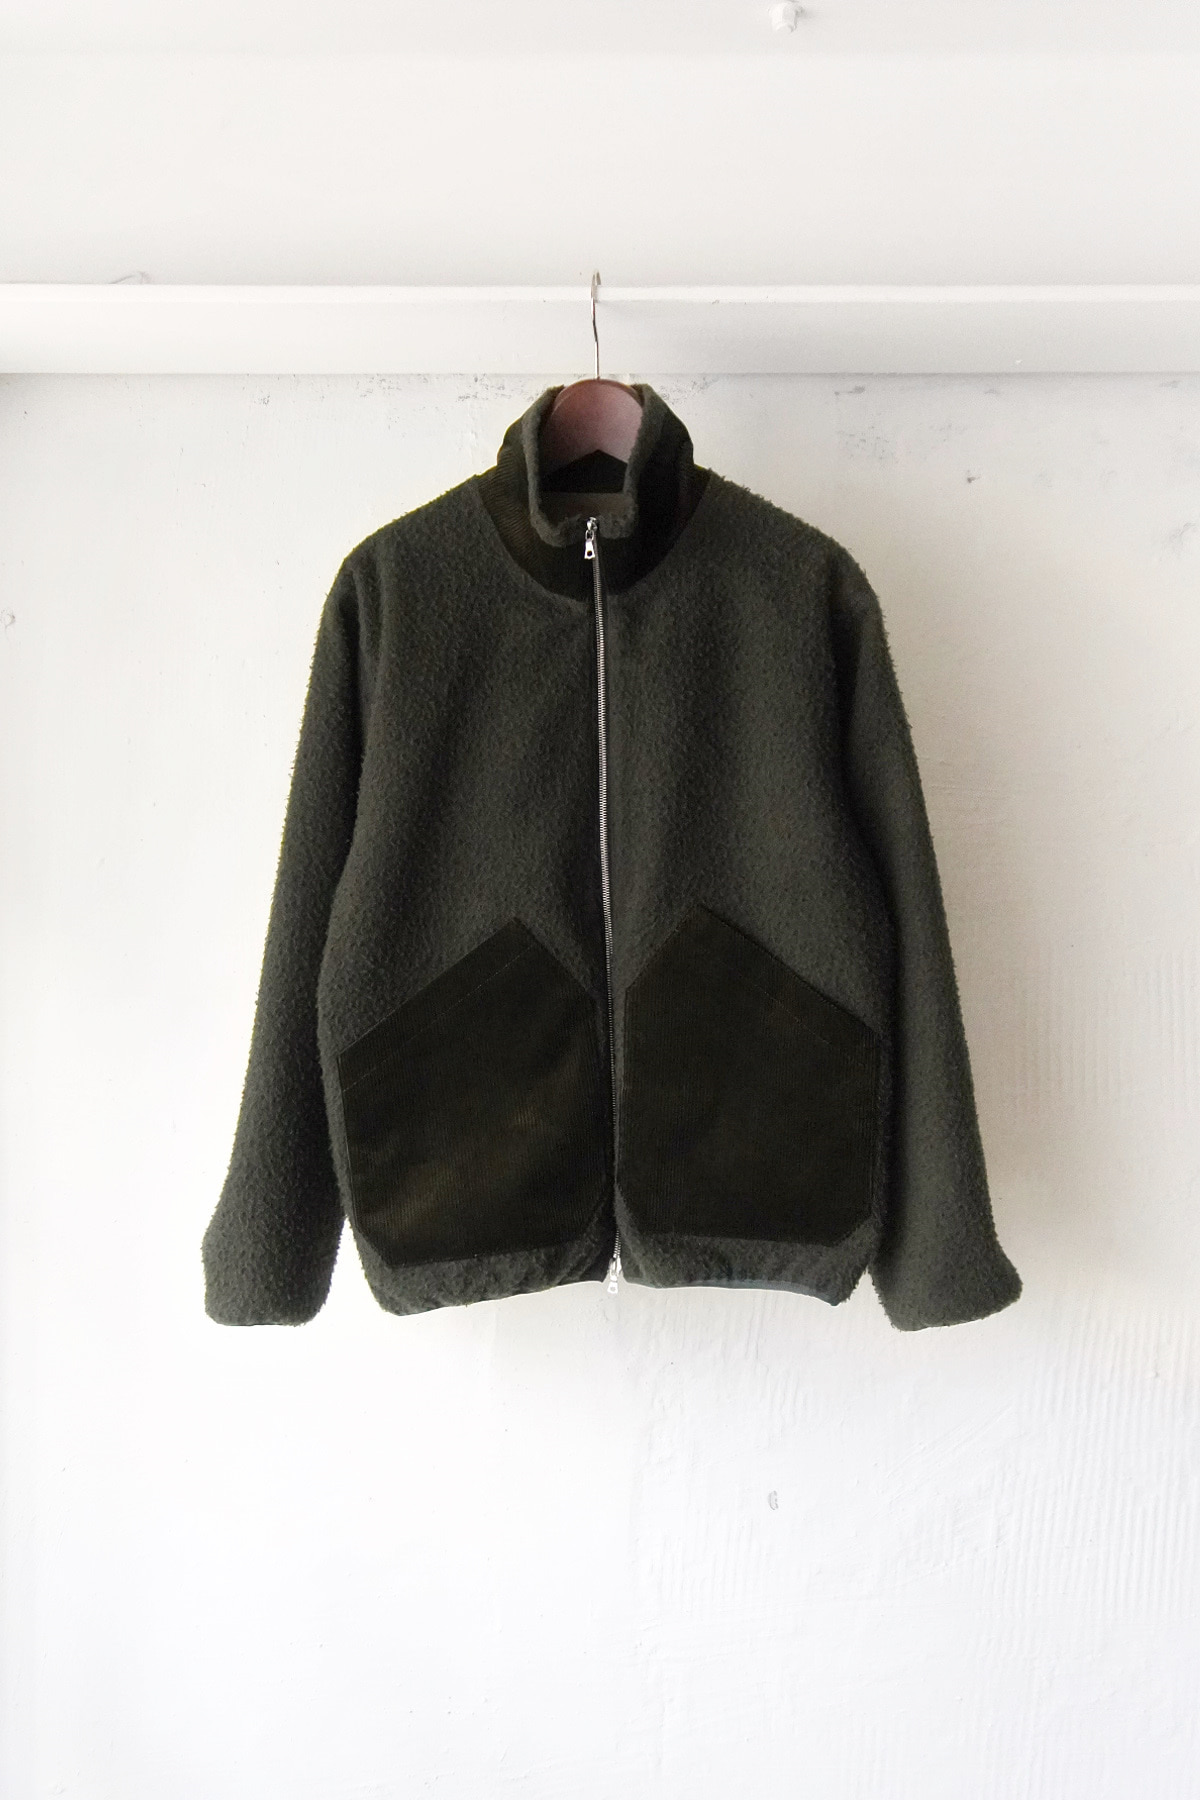 [GAJIROC] Casentino Wool Fleece - Loden Green